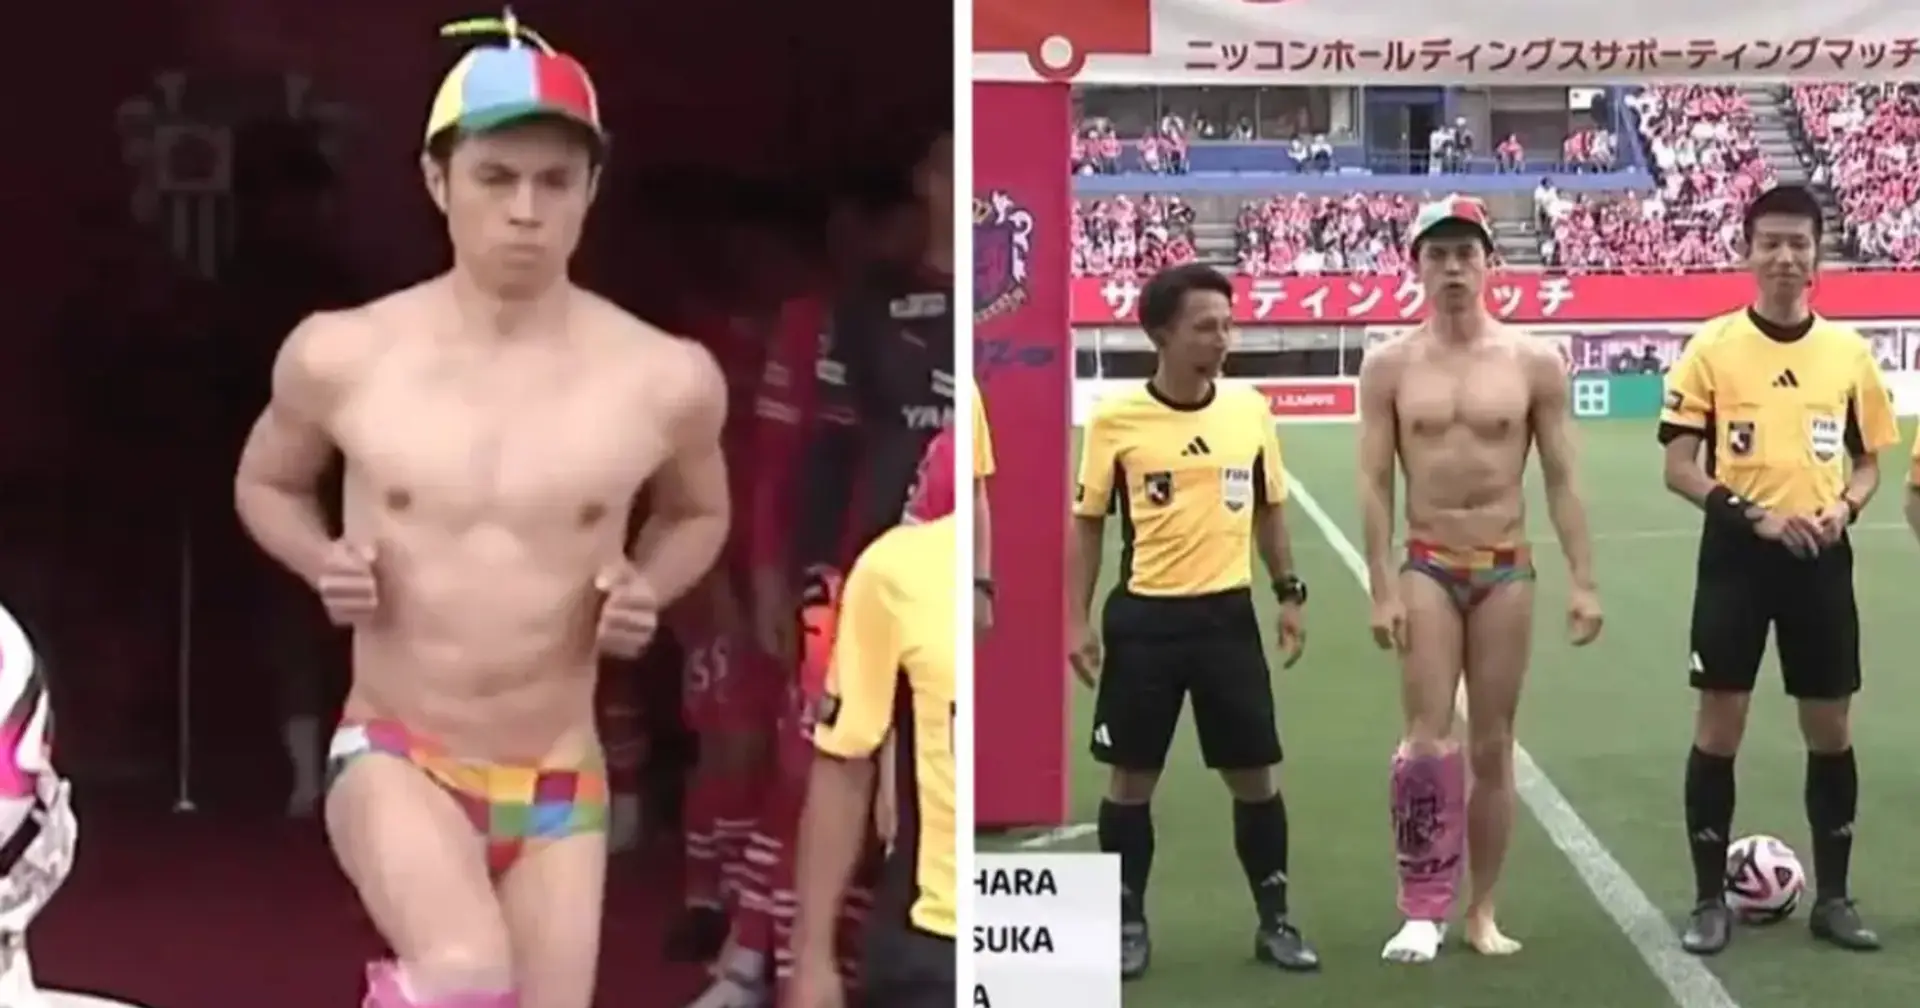 Vor einem Spiel in der japanischen Liga kam ein halbnackter Mann mit den Schiedsrichtern heraus. Was hatte das zu bedeuten?